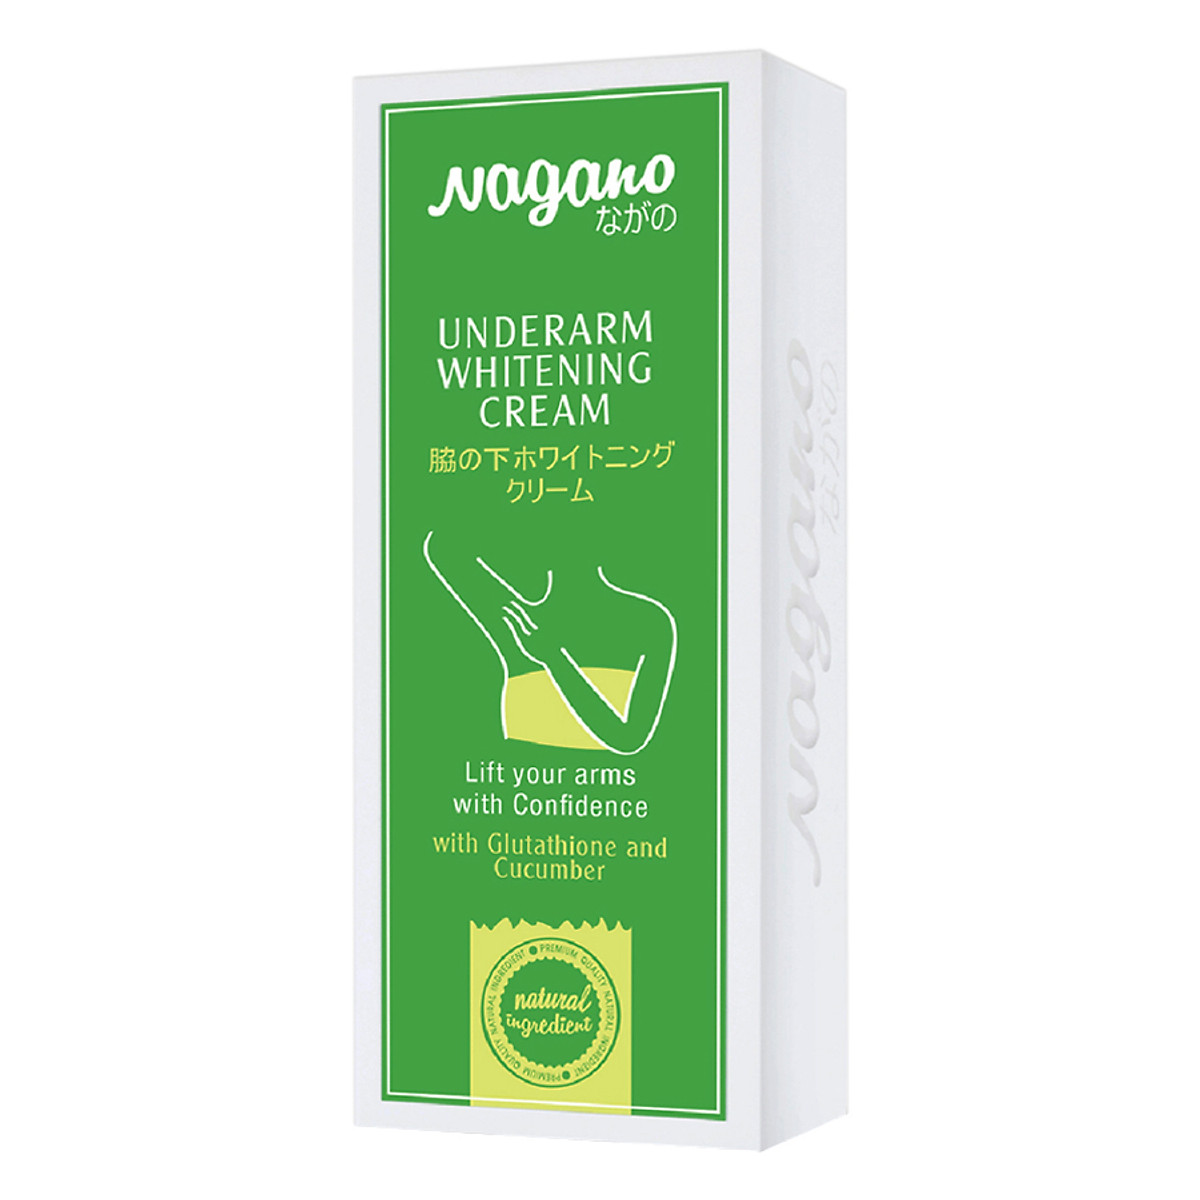 Kem Dưỡng Trắng Da Dưới Cánh Tay Nagano 30ml - Underarn Whitening Cream Nagano 30ml - Chiết xuất Glutathione và dưa chuột giúp dưỡng trắng và khử mùi hiệu quả